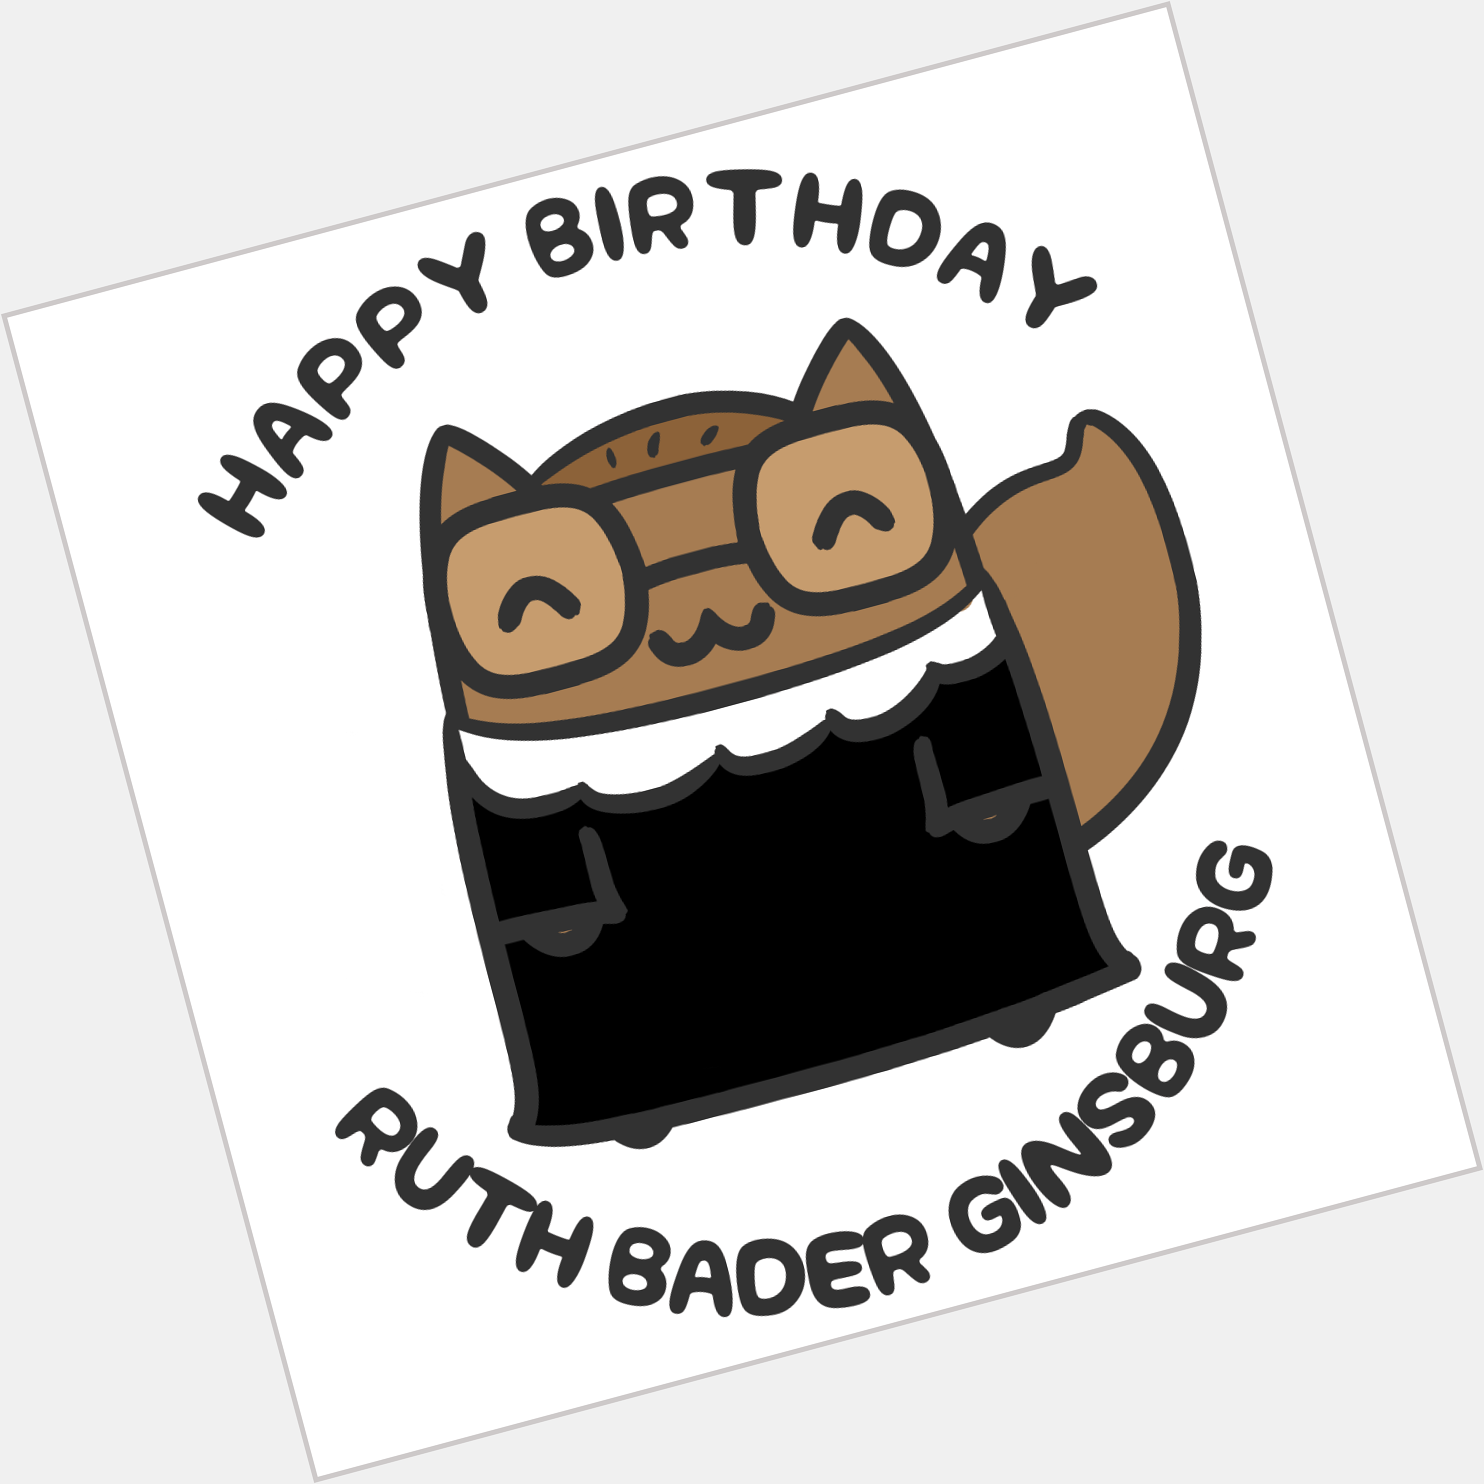 Happy Birthday, Ruth Bader Ginsburg!  